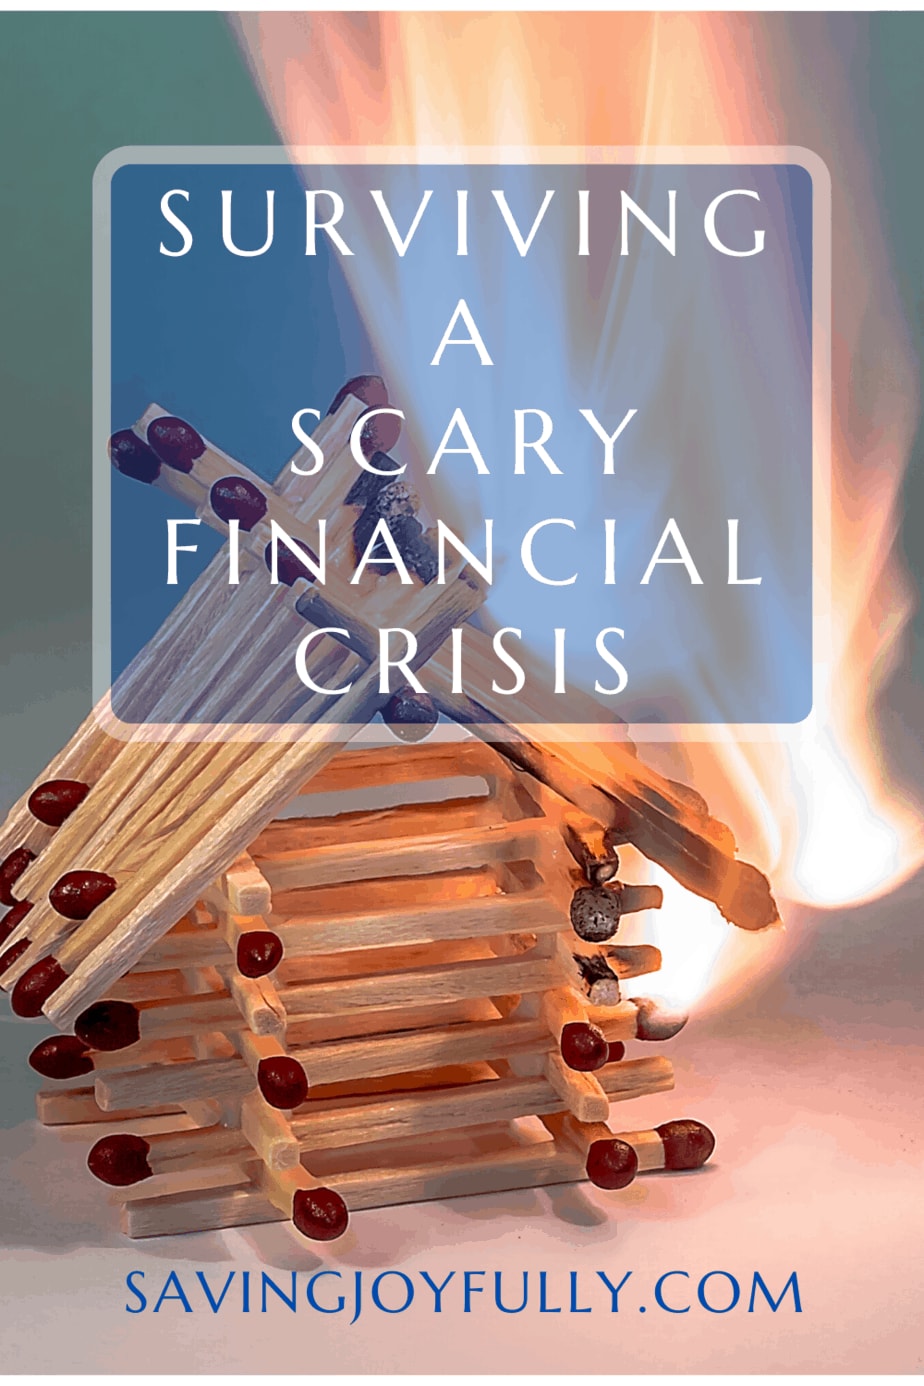 SURVIVING A SCARY FINANCIAL CRISIS